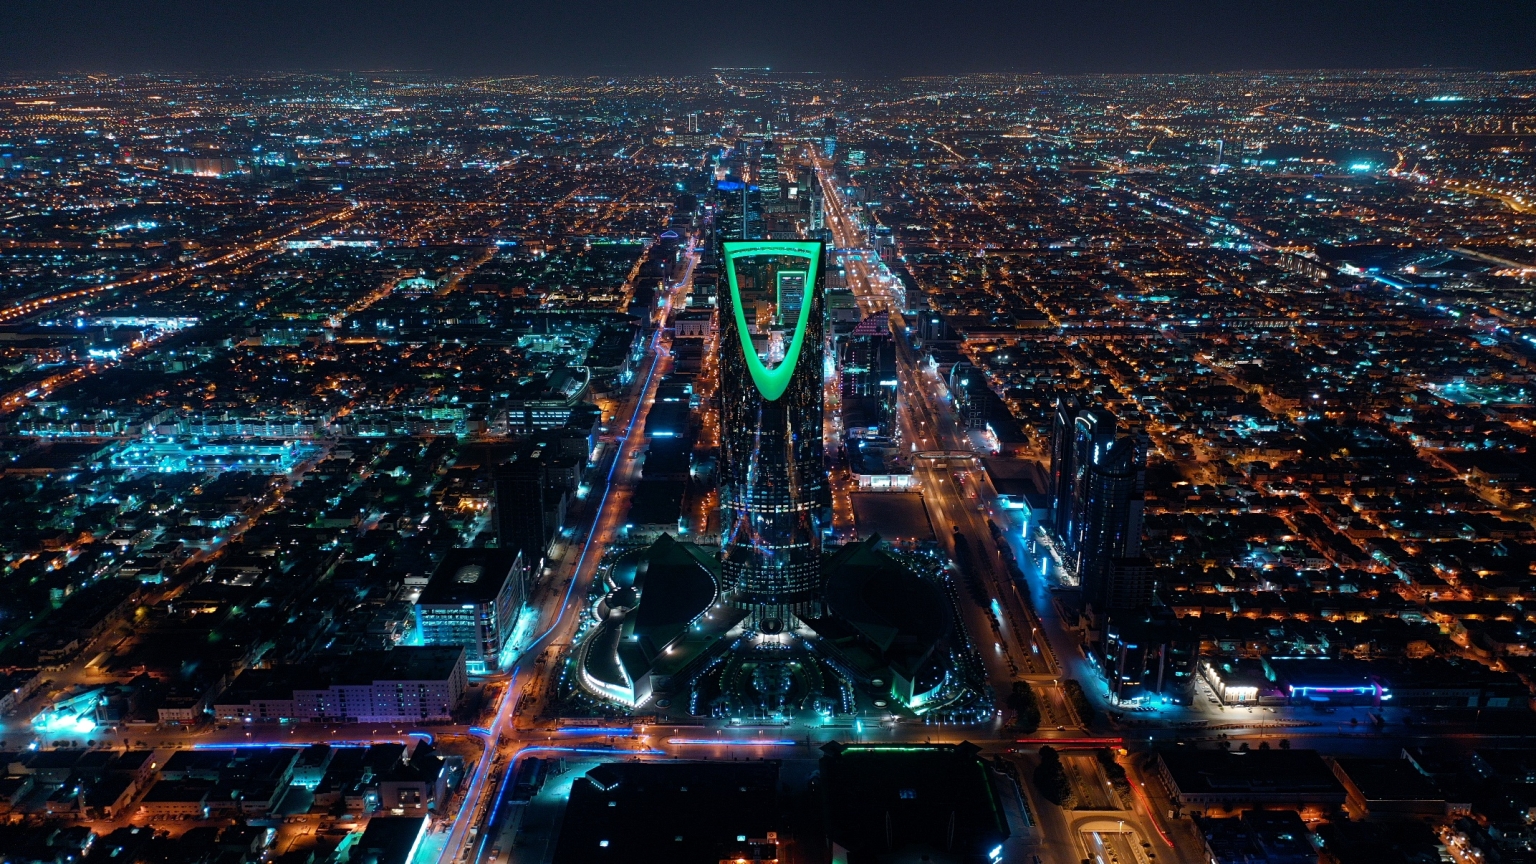  沙特利雅得将主办 2030 年世博会，揭开 “变革时代”之序幕